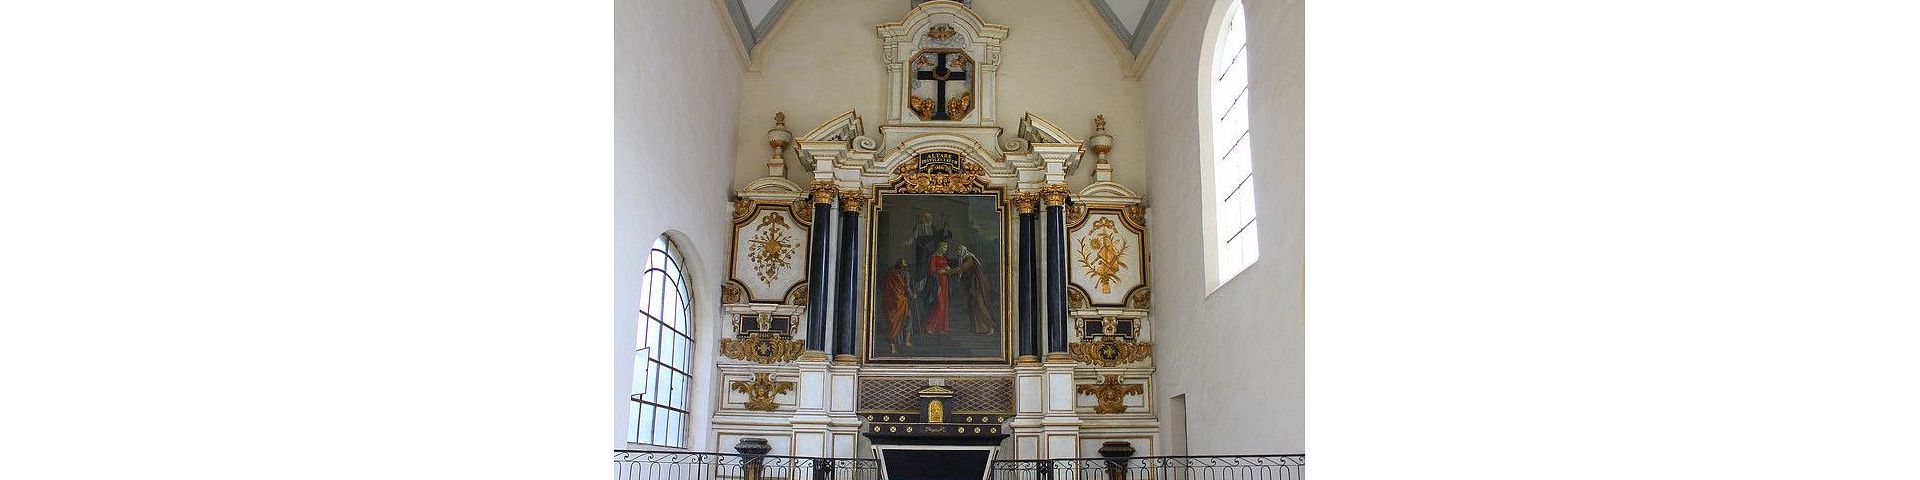 Nevers - Chapelle de la Visitation (58)